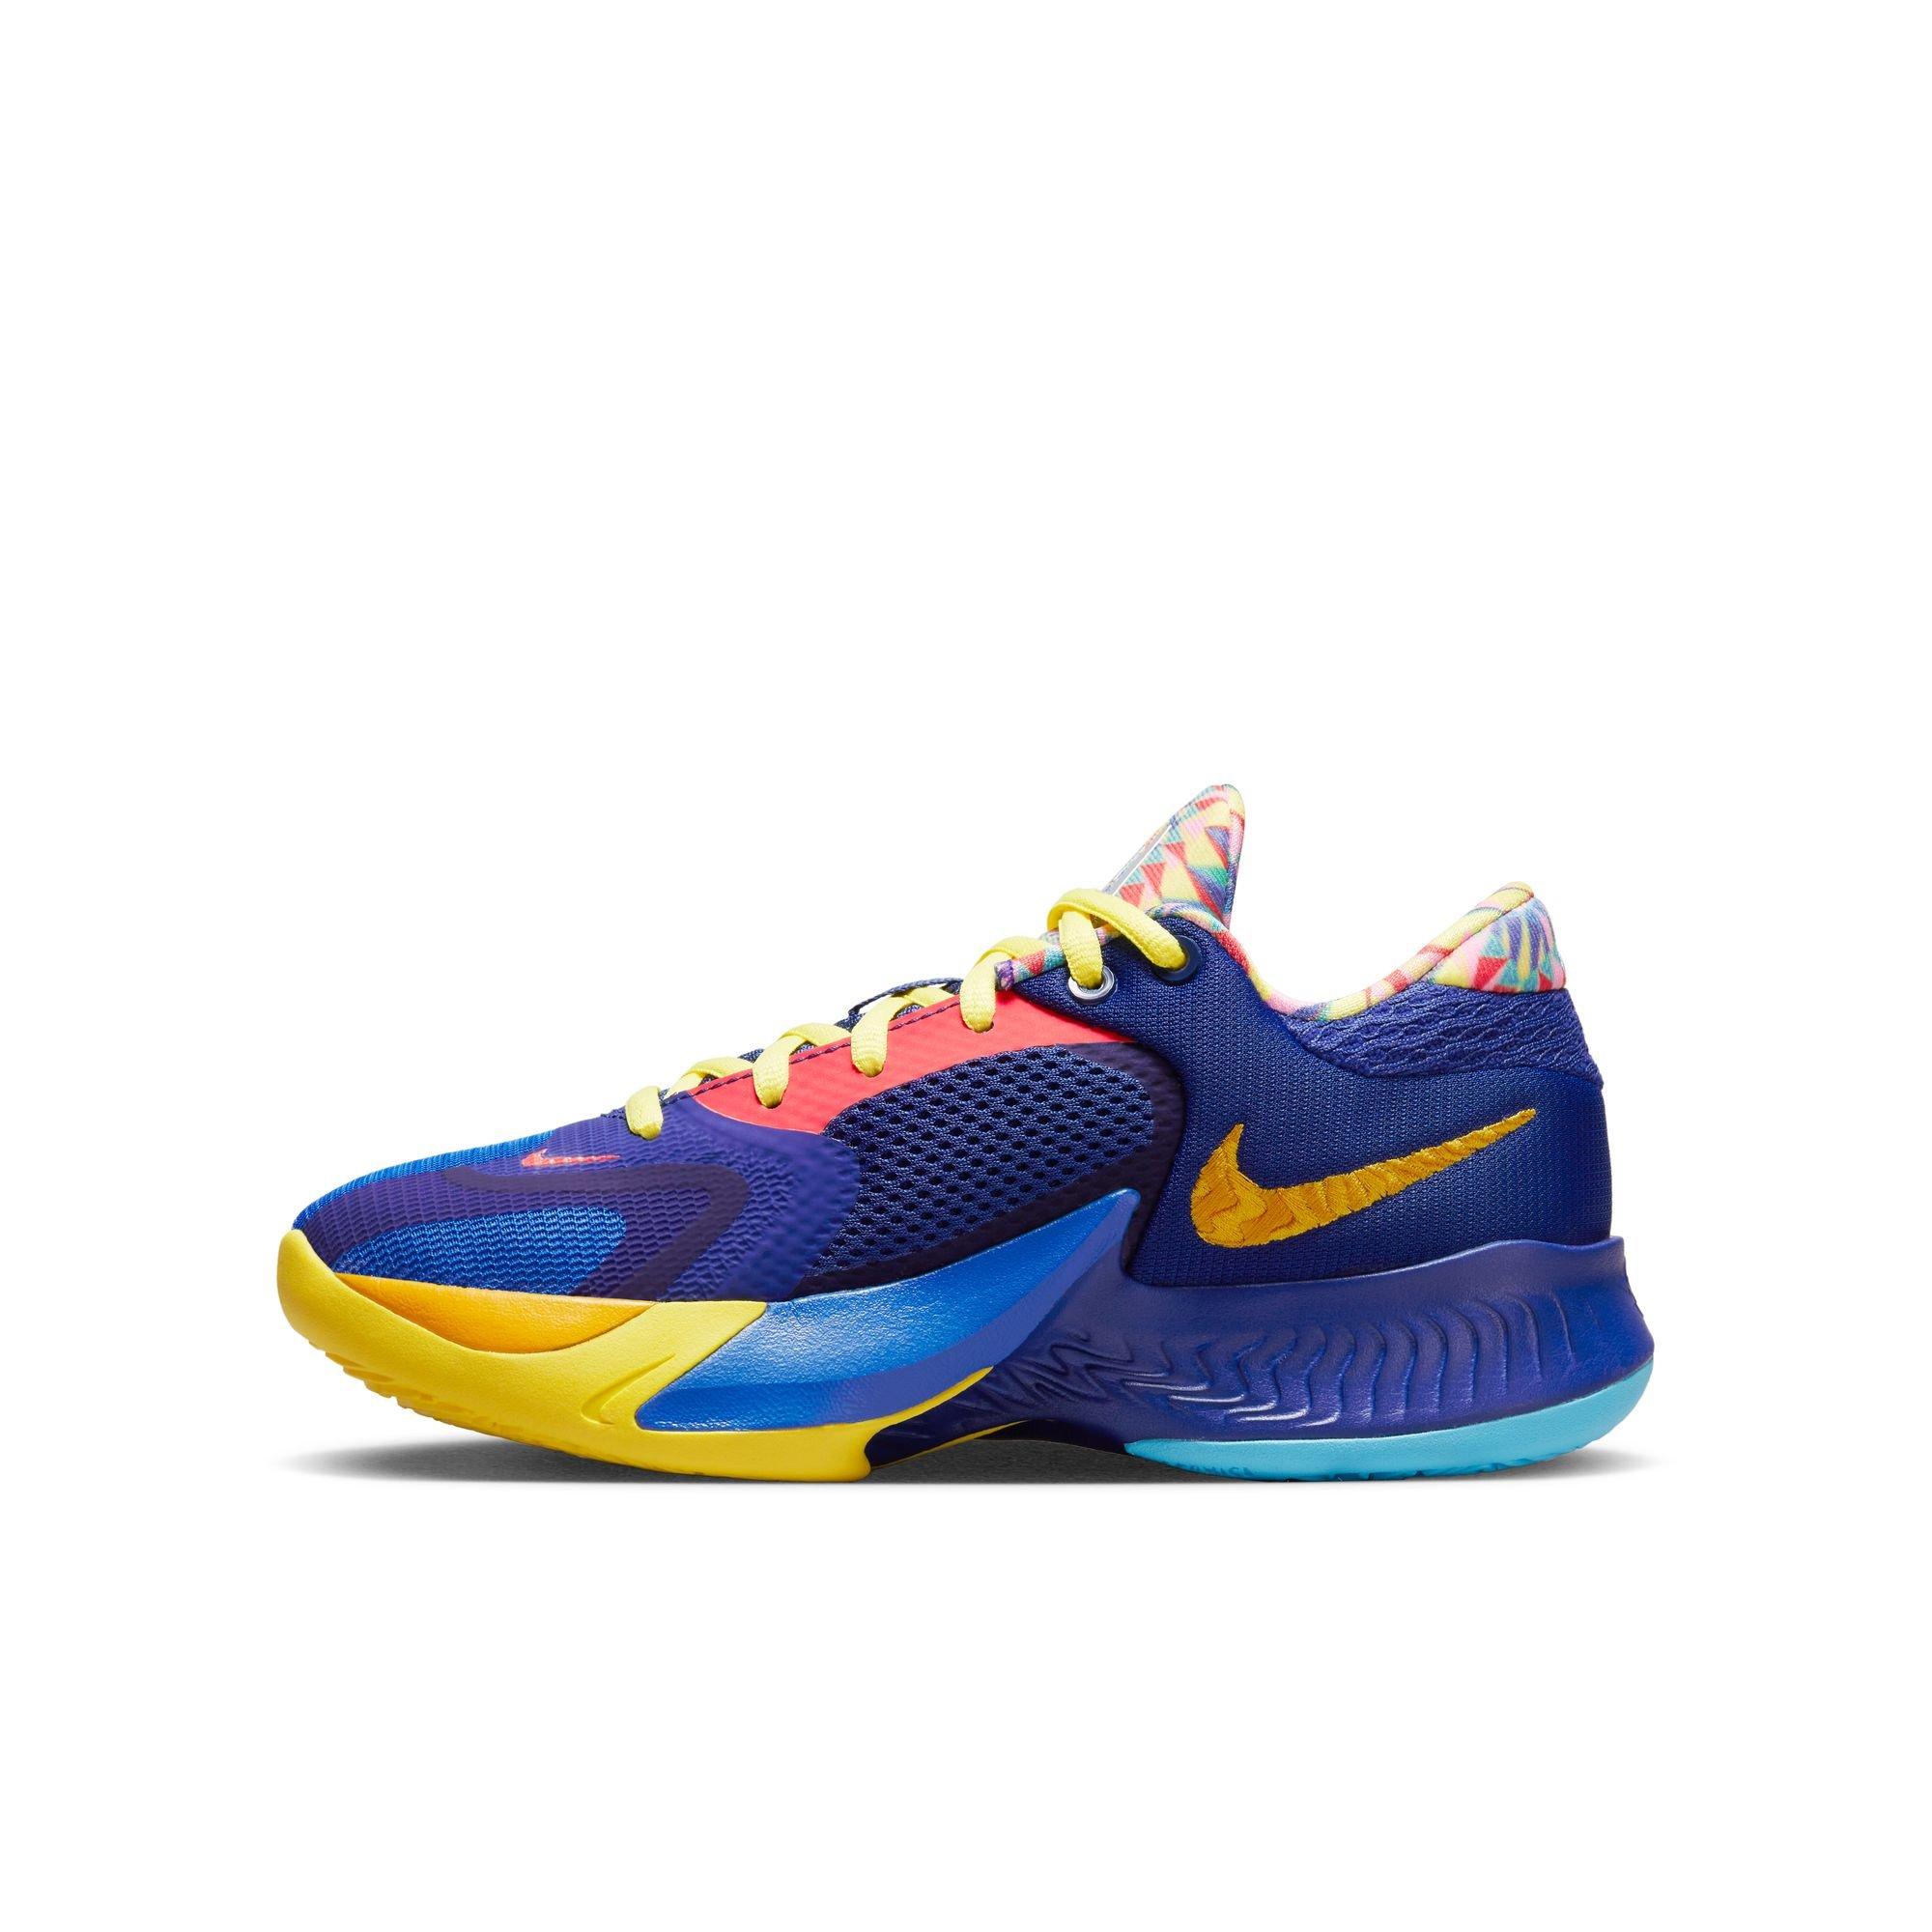 Nike Zoom Freak 4 NRG Basketball Shoes Size 10.5